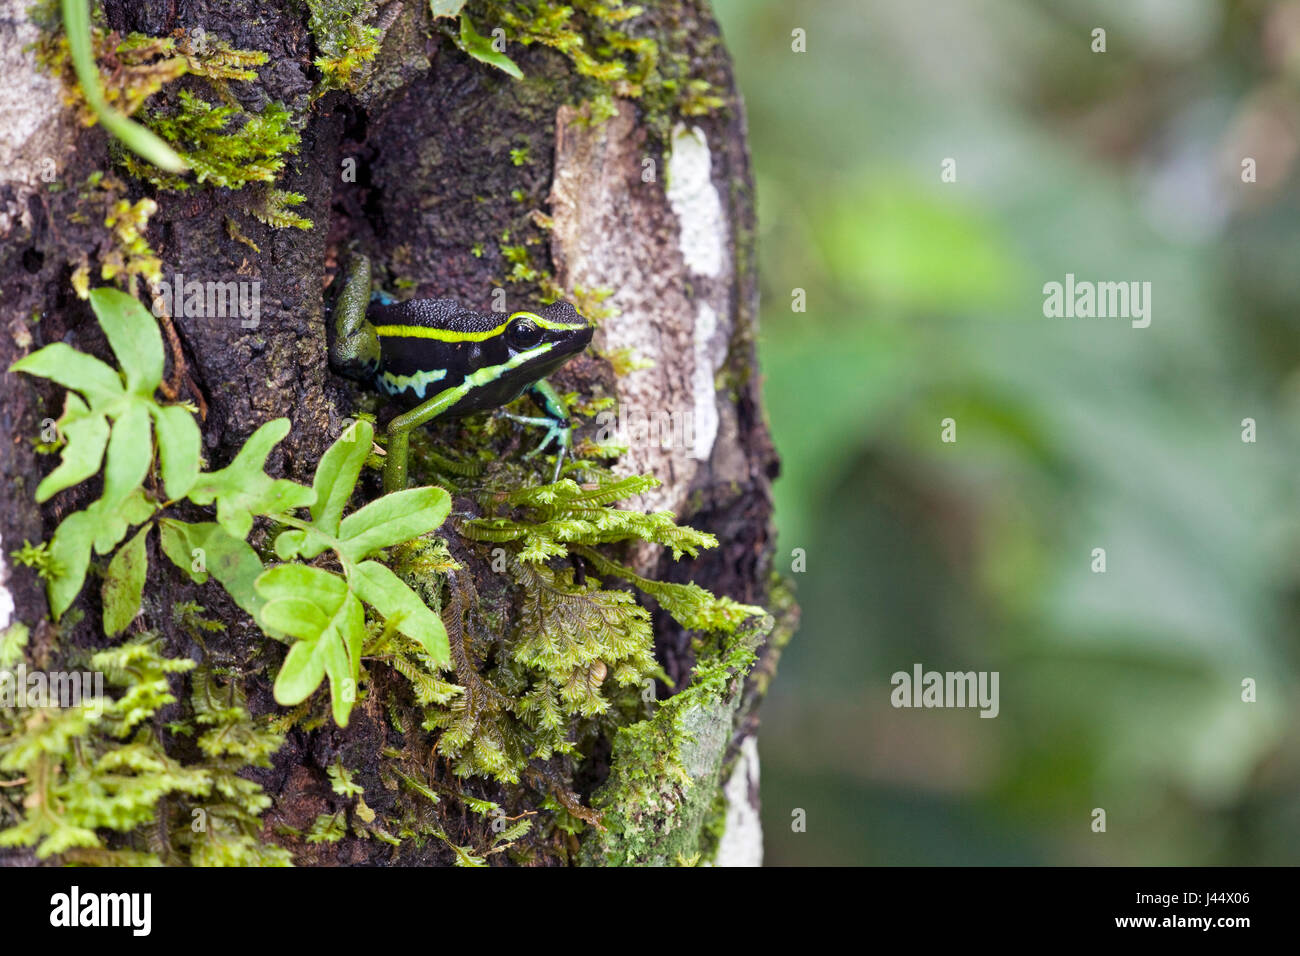 Photo d'un trois-striped poison dart frog assis dans un trou d'arbre Banque D'Images